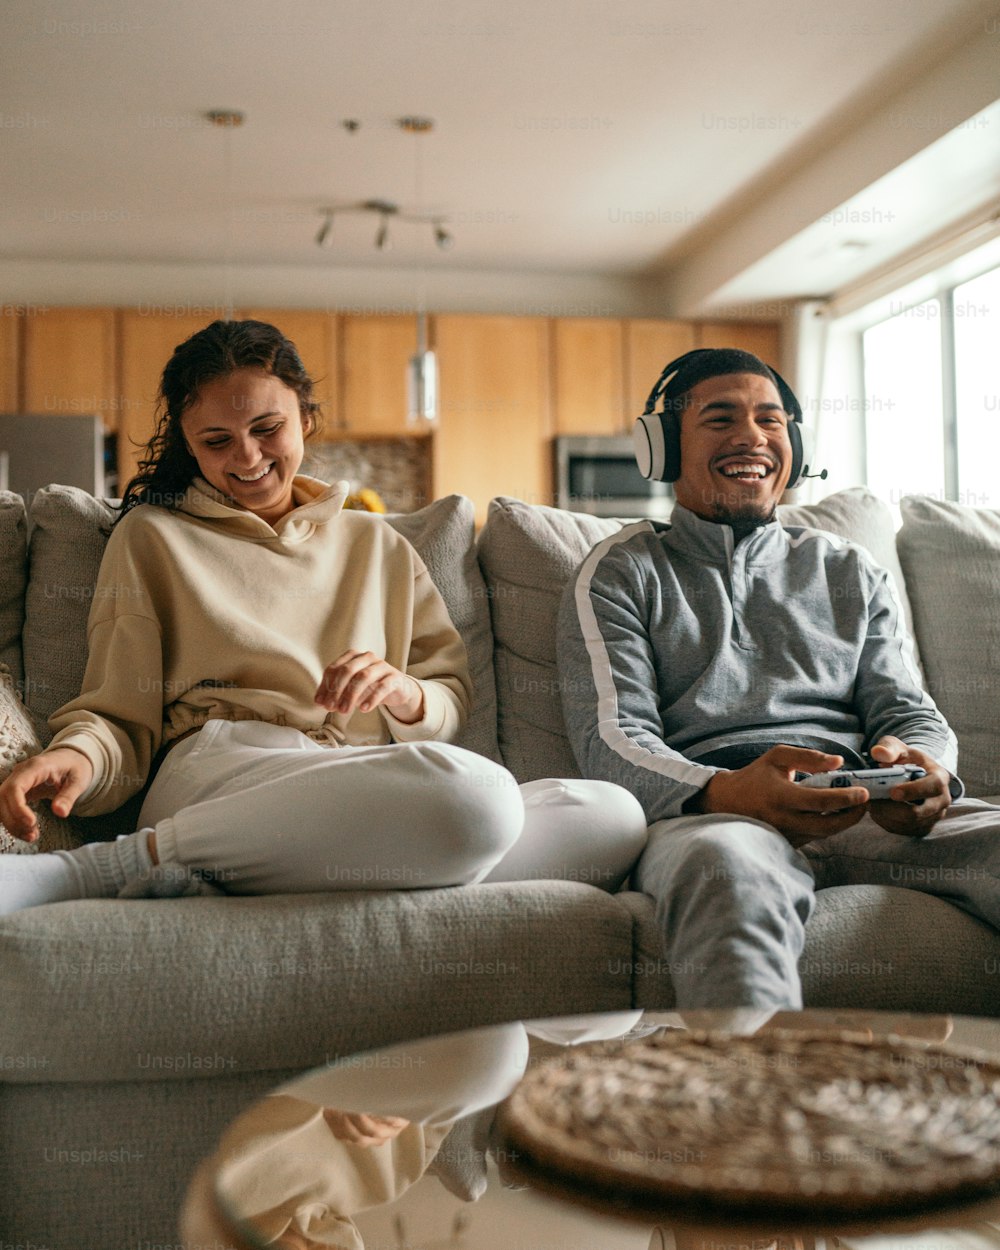 Un uomo e una donna seduti su un divano che giocano a un videogioco